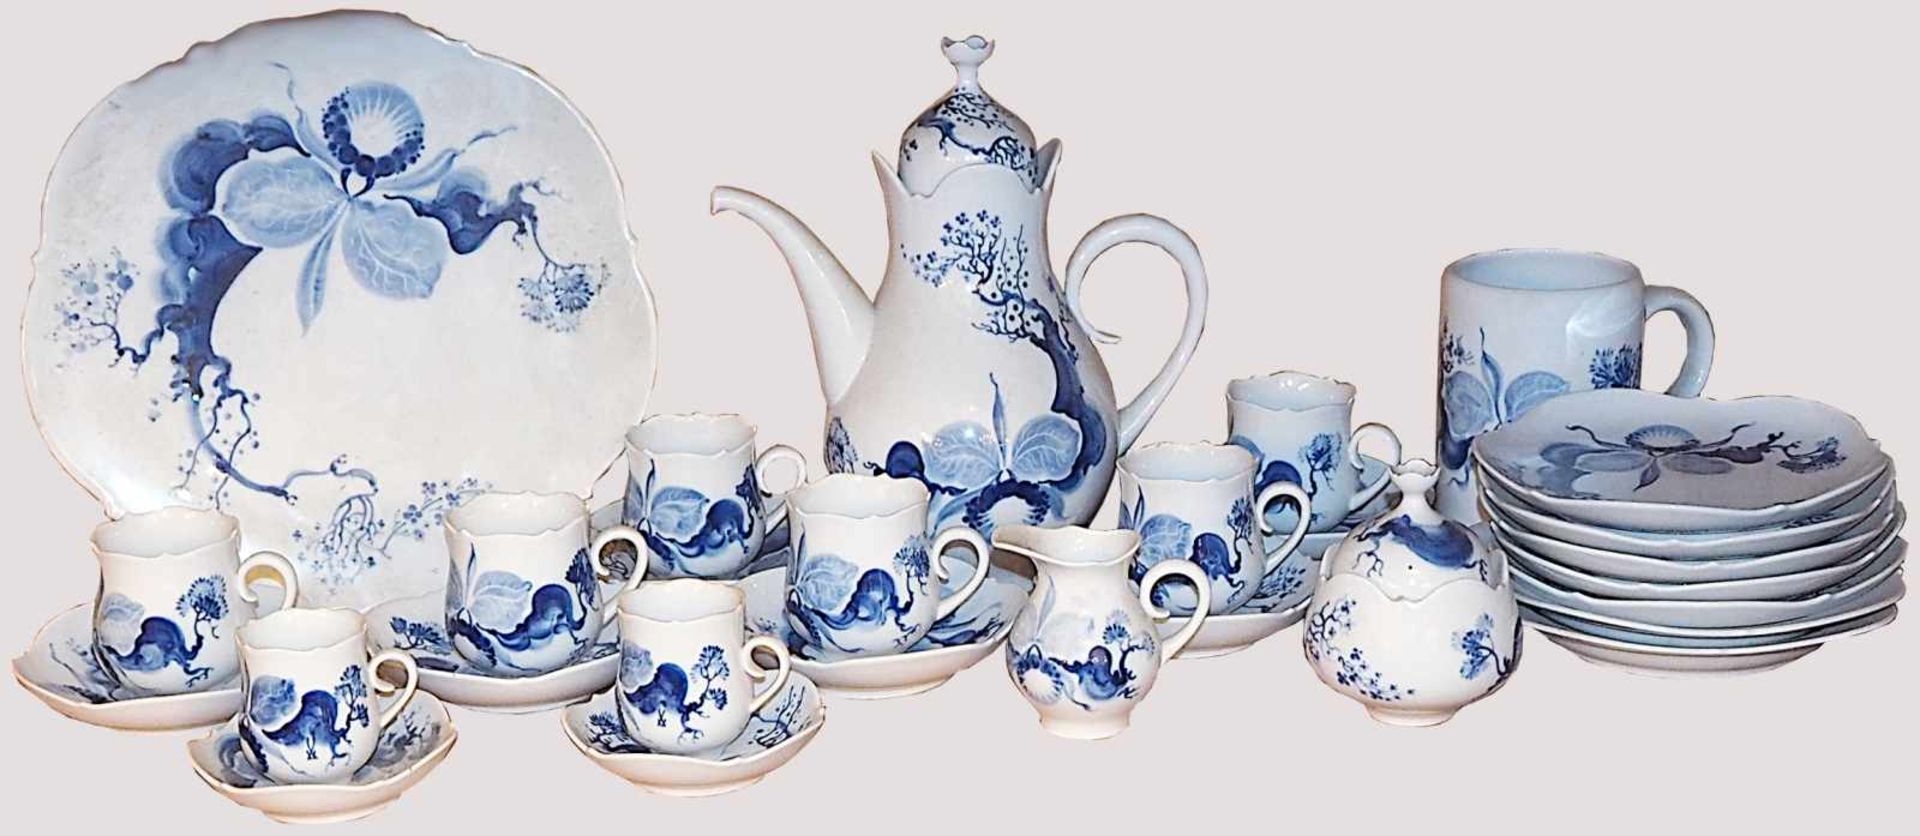 Kaffeerestservice Porzellan MEISSEN "Blaue Orchidee"Entwurf: Prof. Heinz WERNER (wohl 1928-2019),